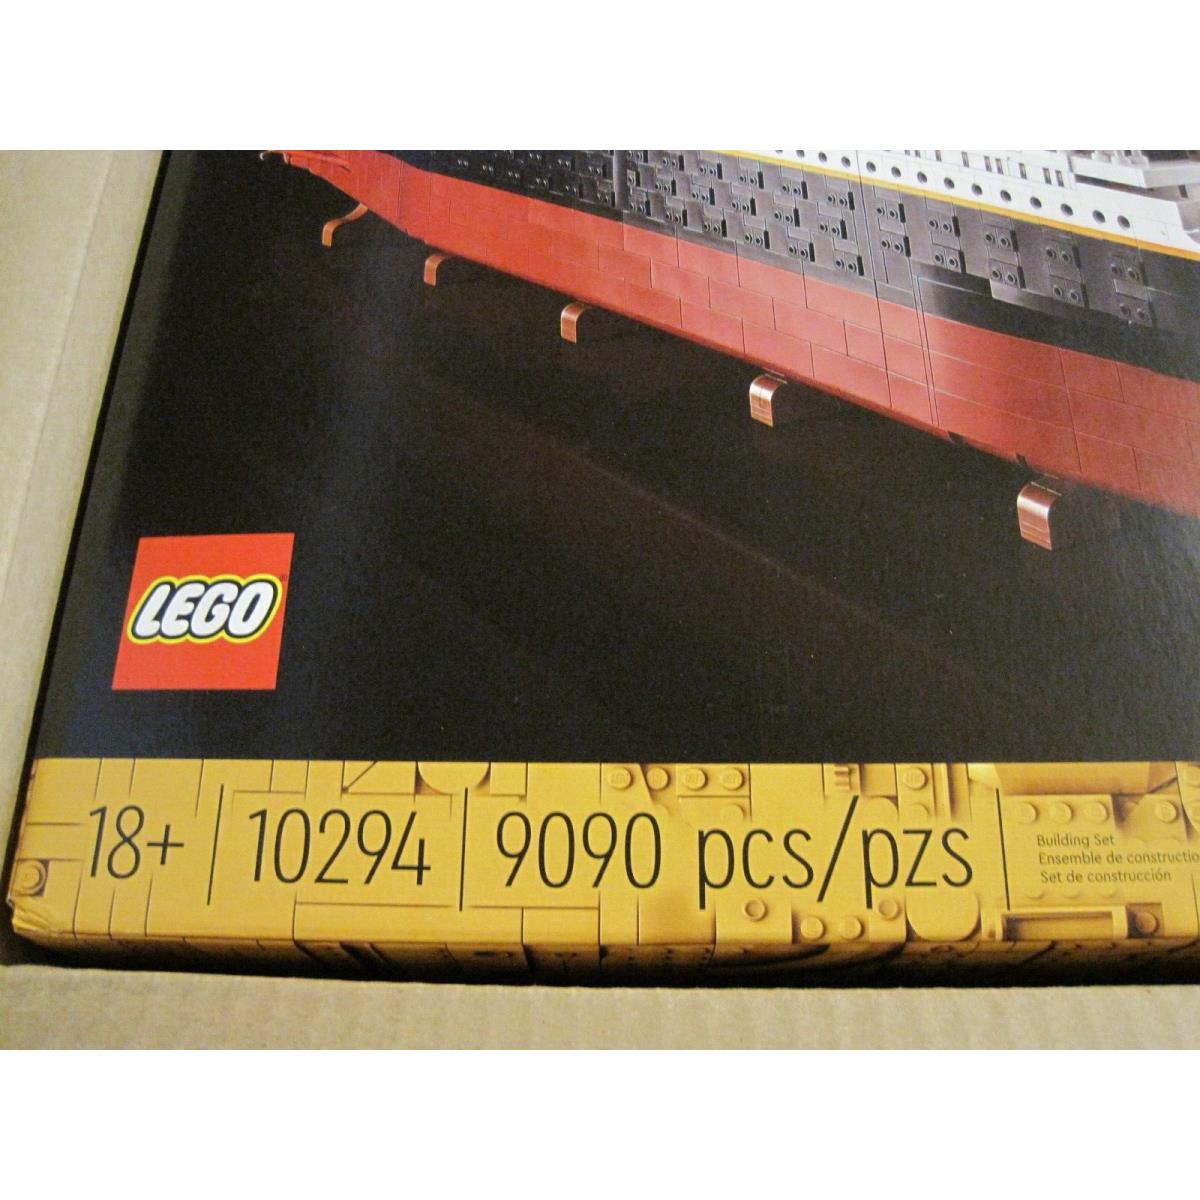 2021 Lego 10294 Titanic 9090 Pieces